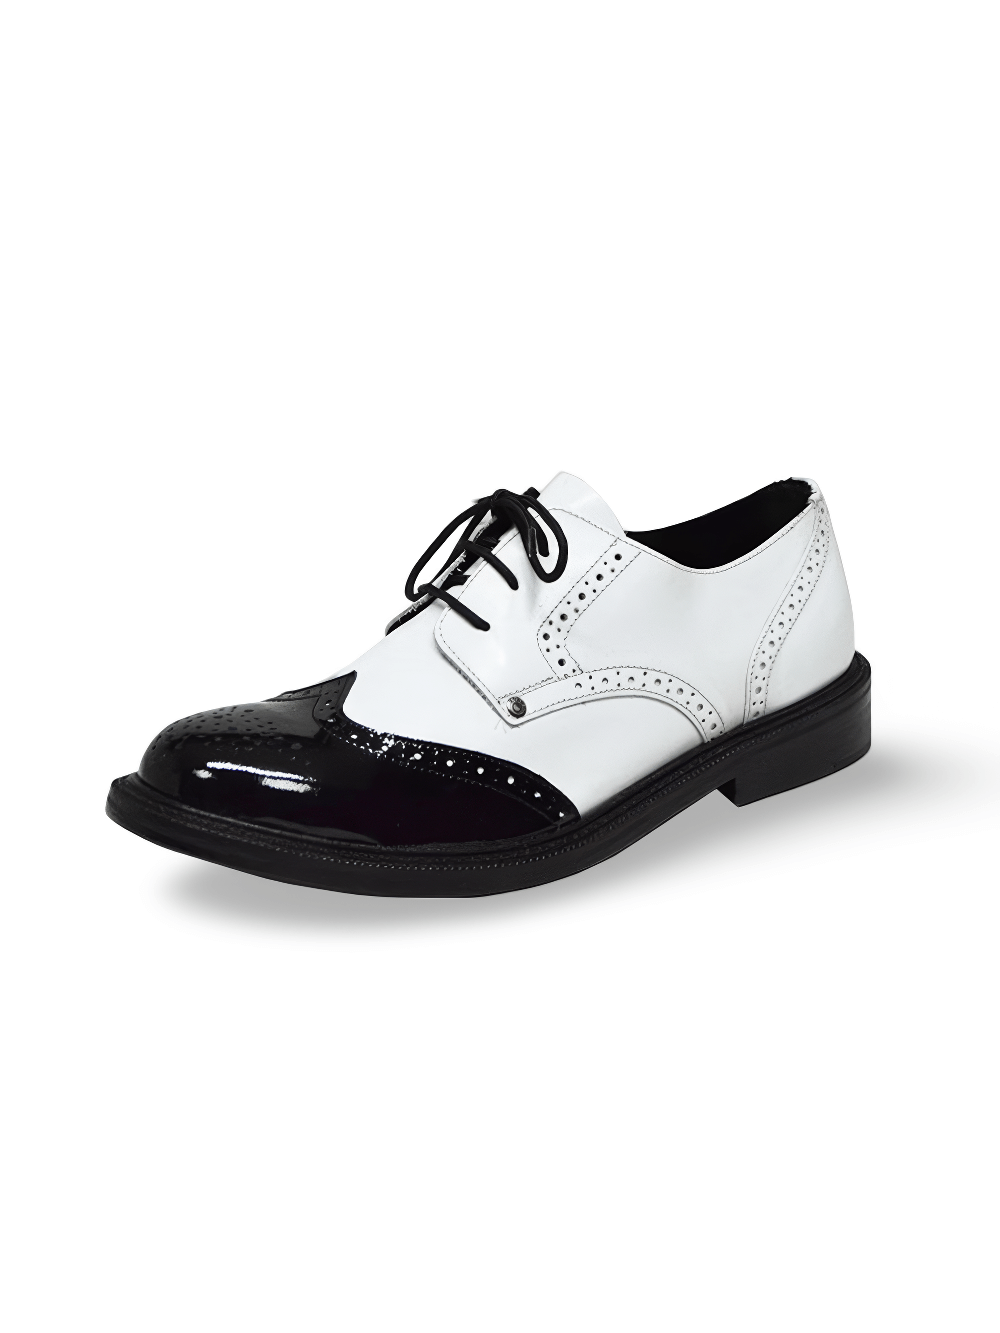 Chaussures Derby élégantes blanches et noires pour hommes à bout rond